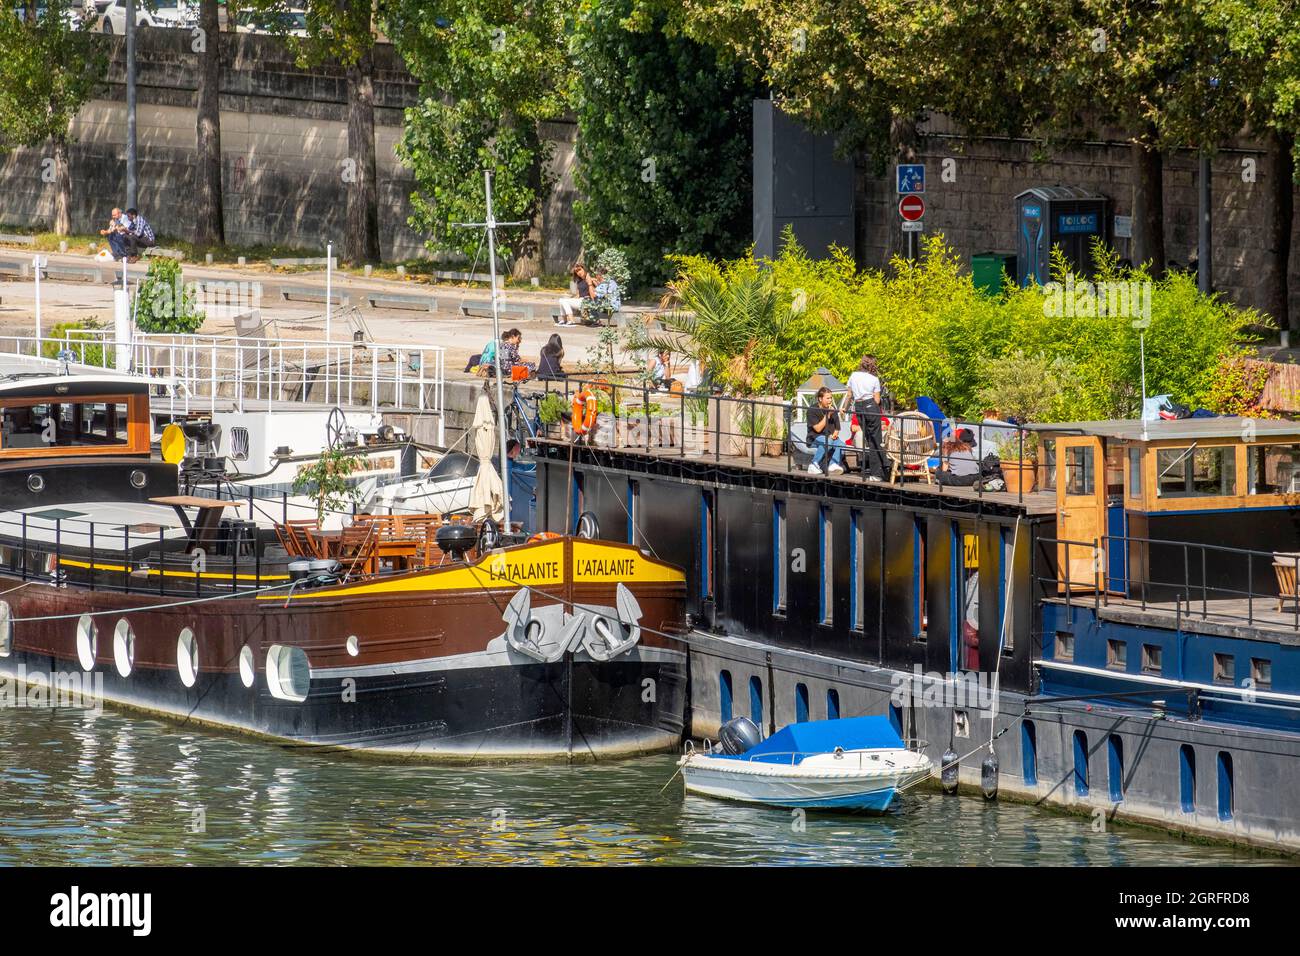 France, Paris, the banks of the Seine, habitable barge, quai de la rapée Stock Photo